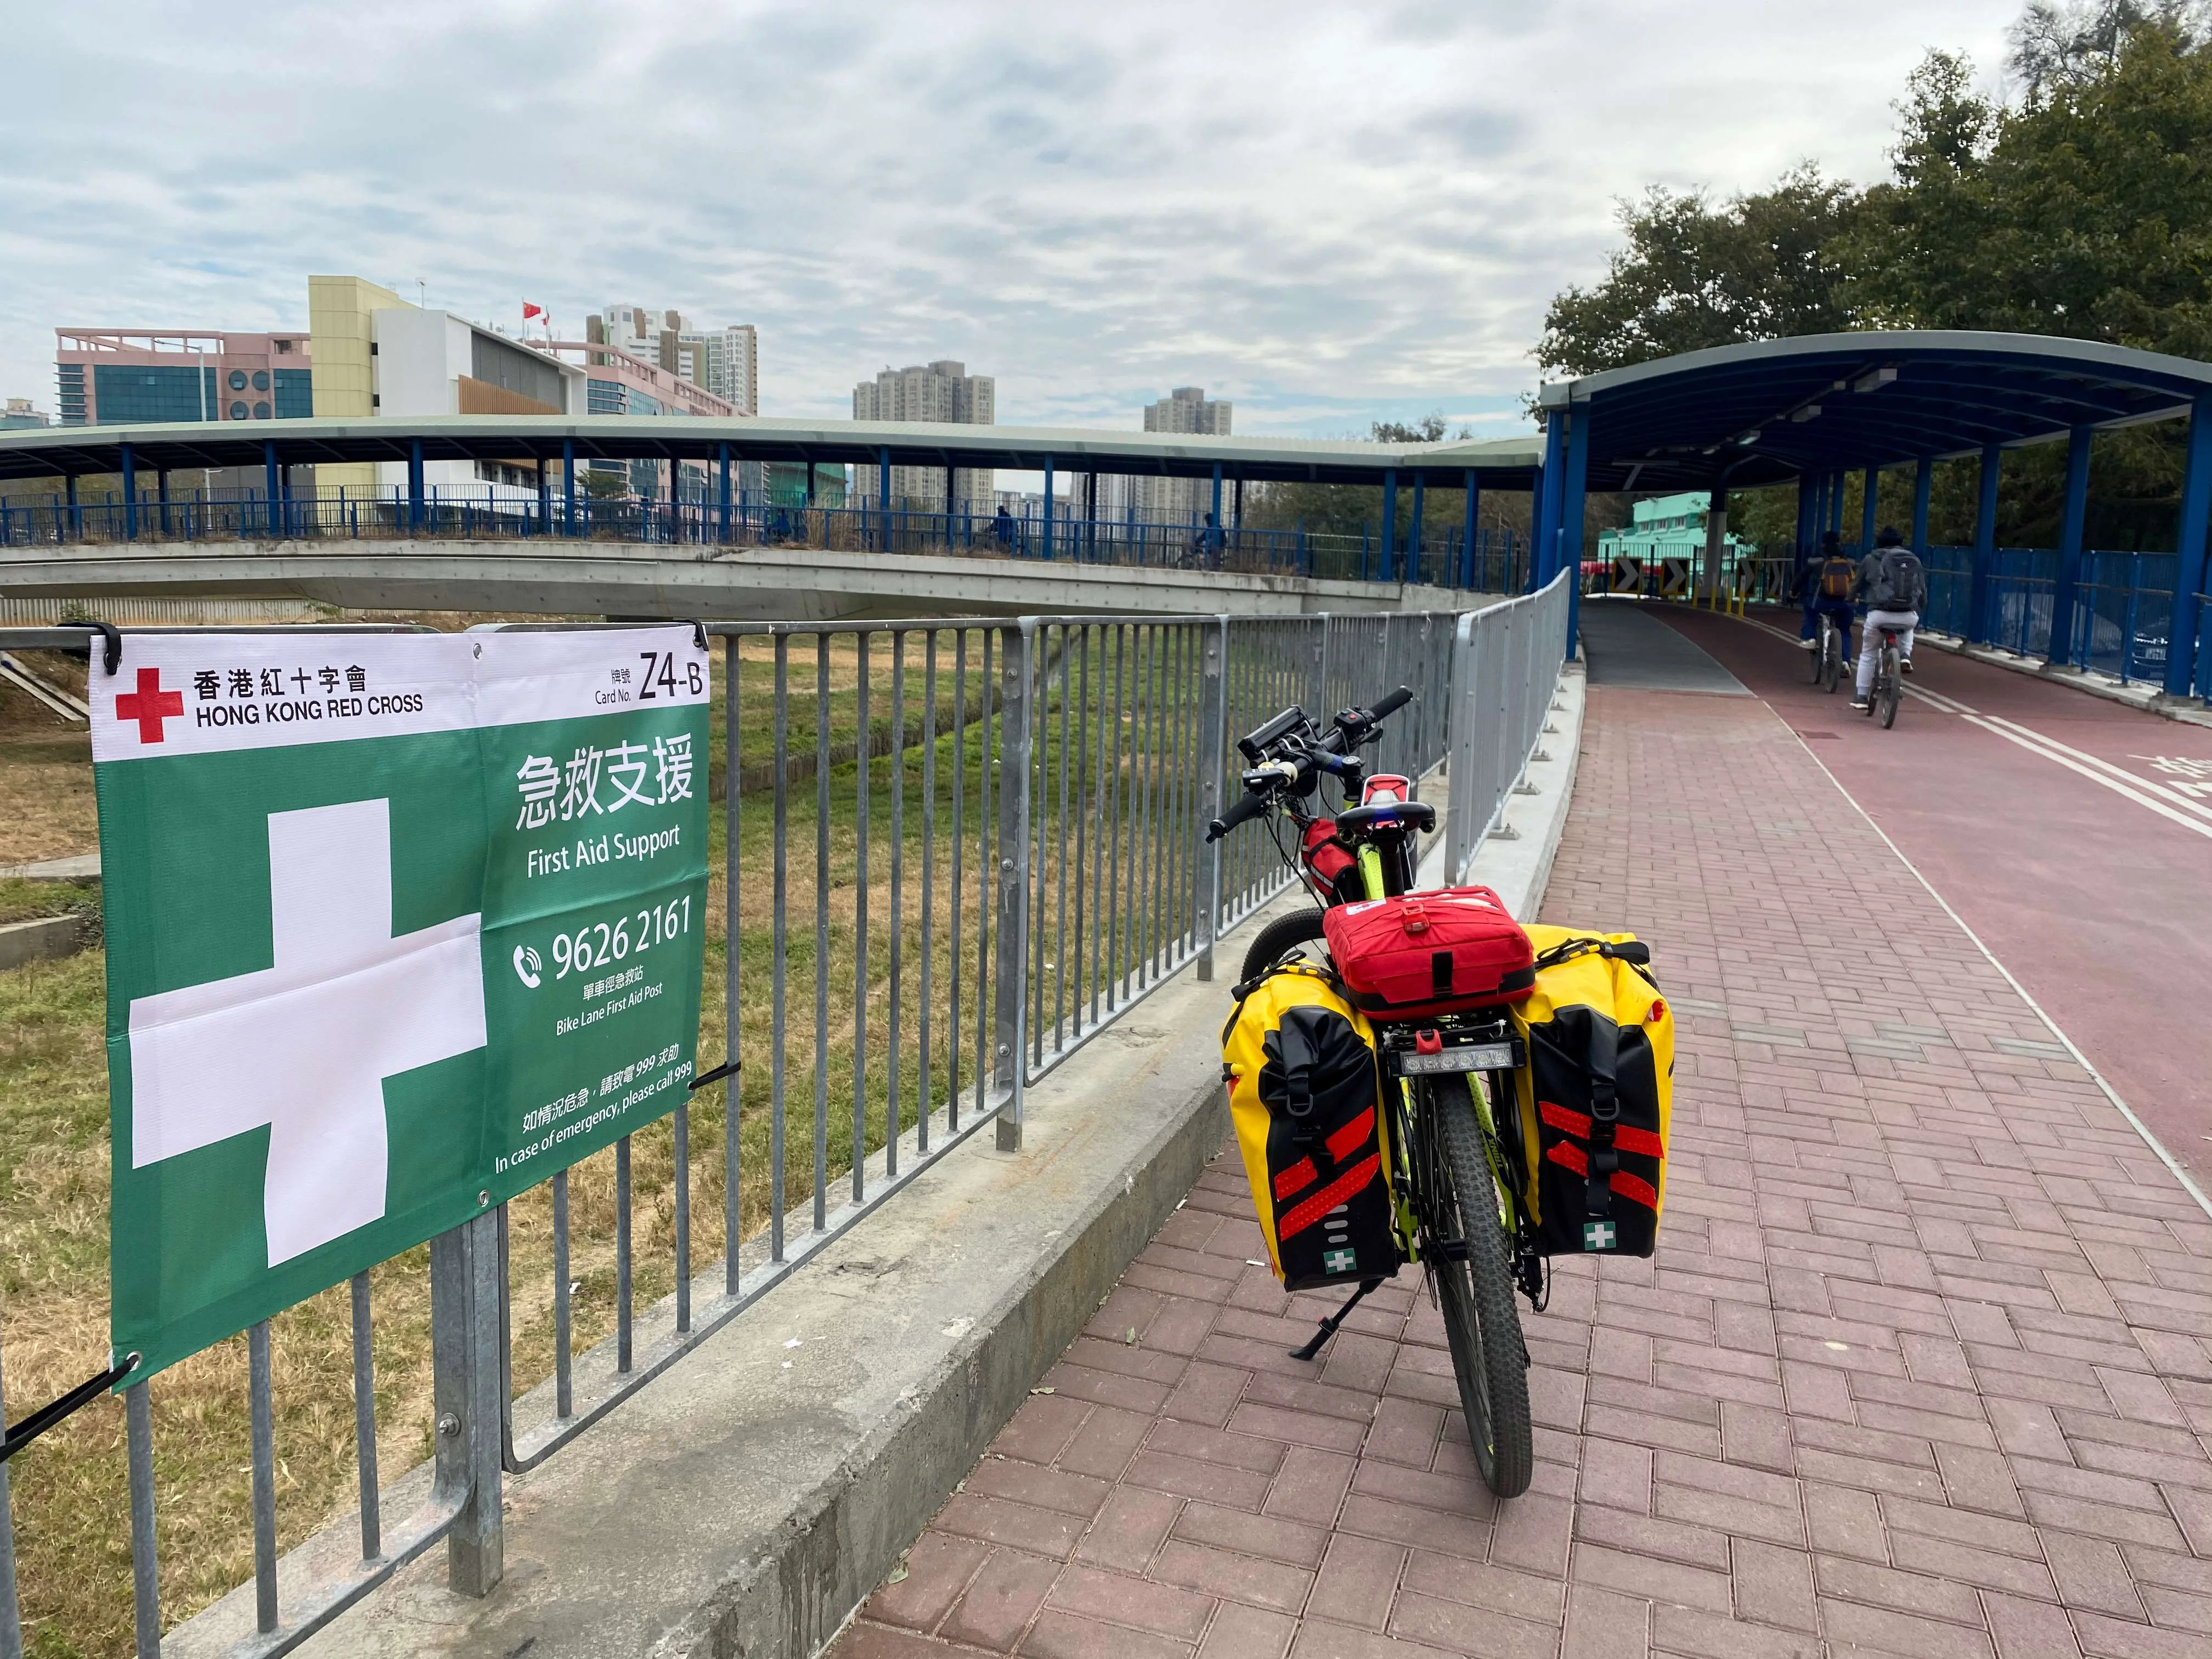 為提供更即時及彈性的急救支援，香港紅十字會於2020年11月開展單車急救服務。單車急救隊當值期間，沿單車徑路旁會掛有綠底白十字大型橫額以提供支援熱線。